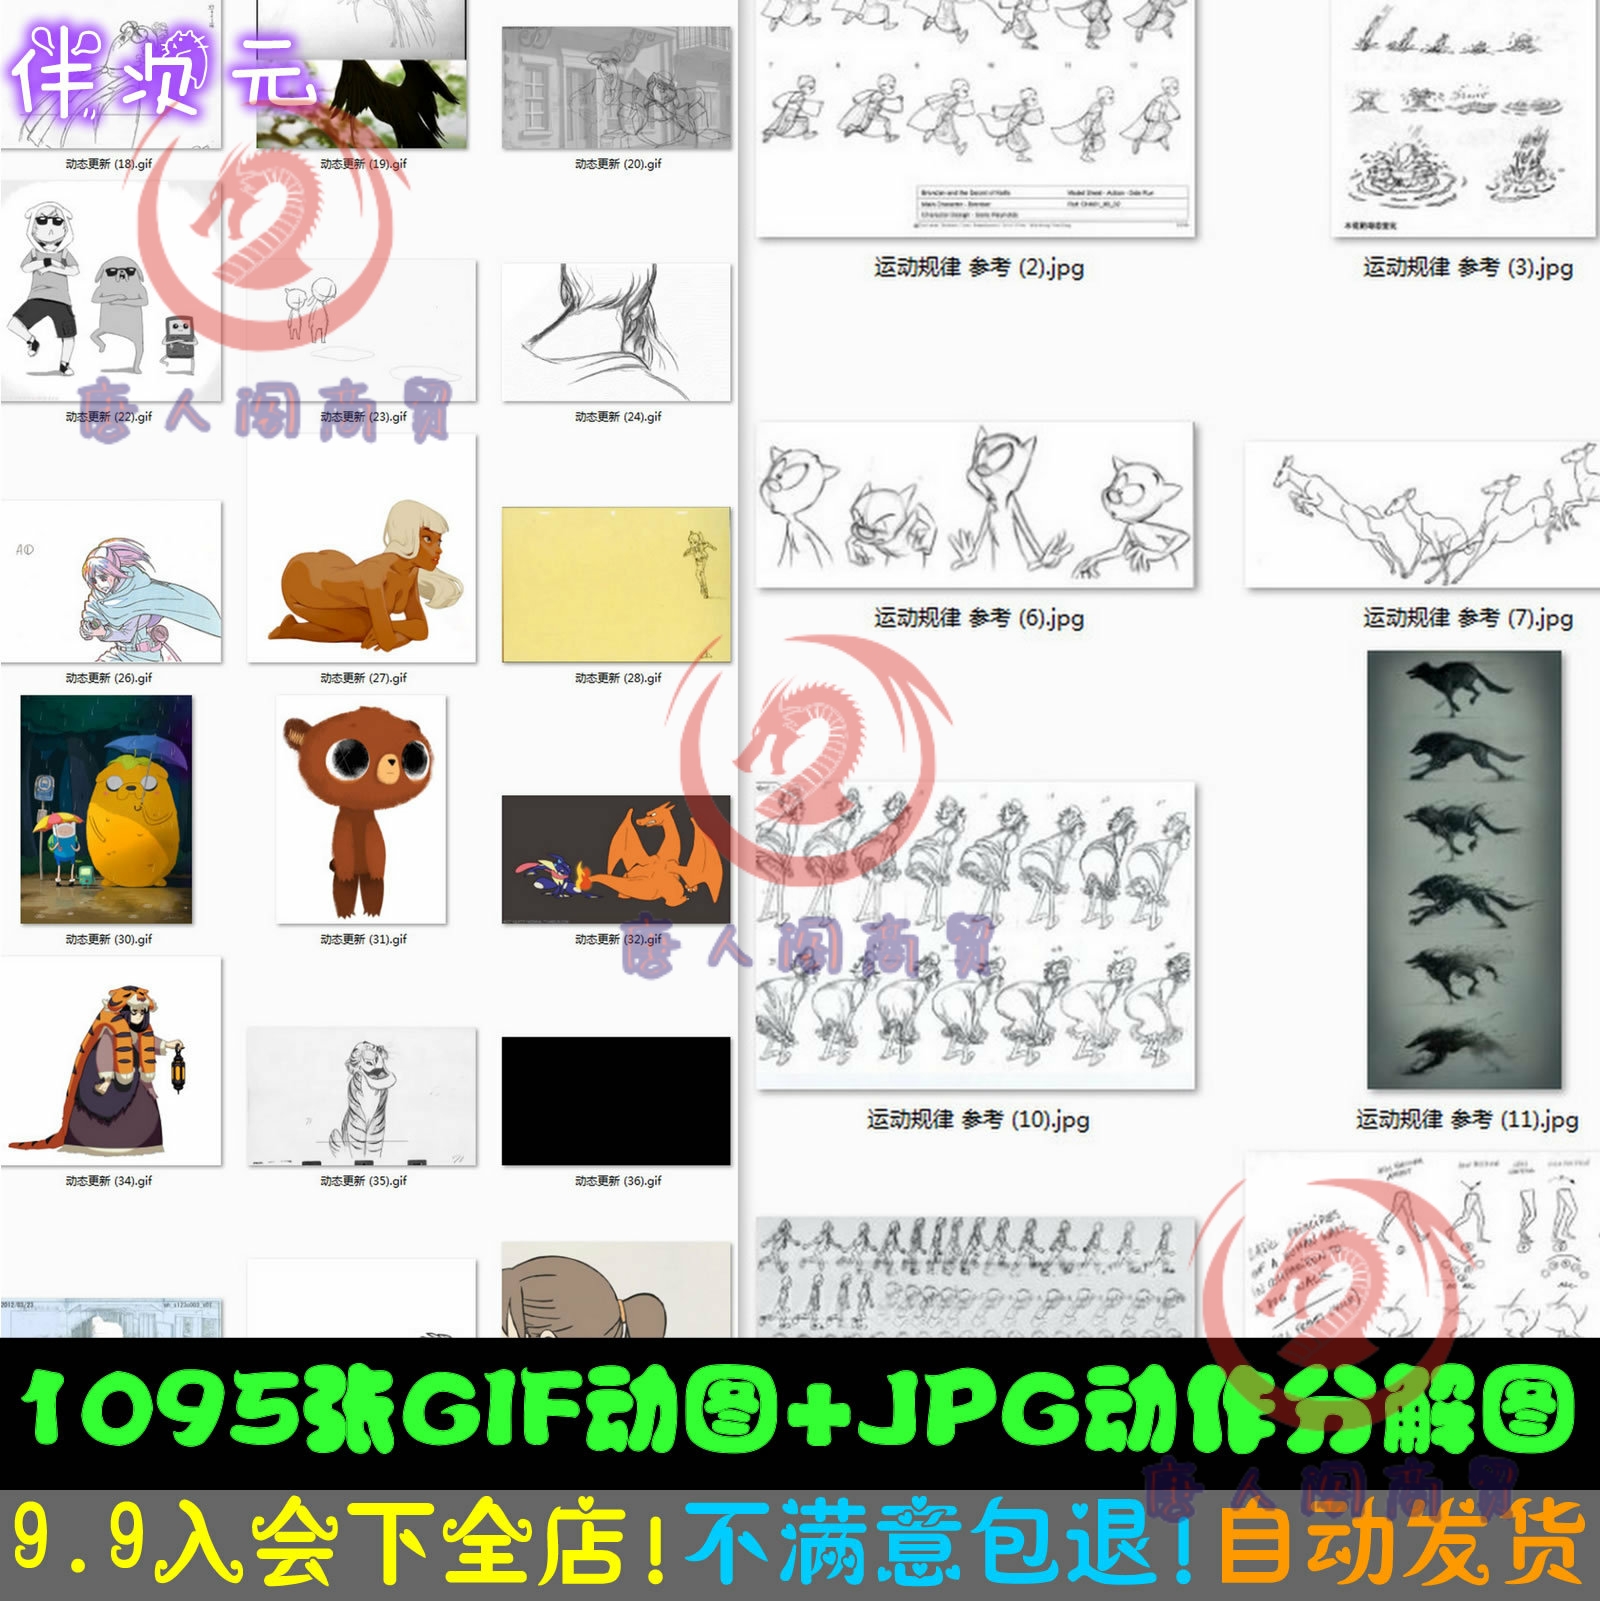 1095张GIF动图 JPG动画运动分解规律卡通人物动态捕捉自媒体素材